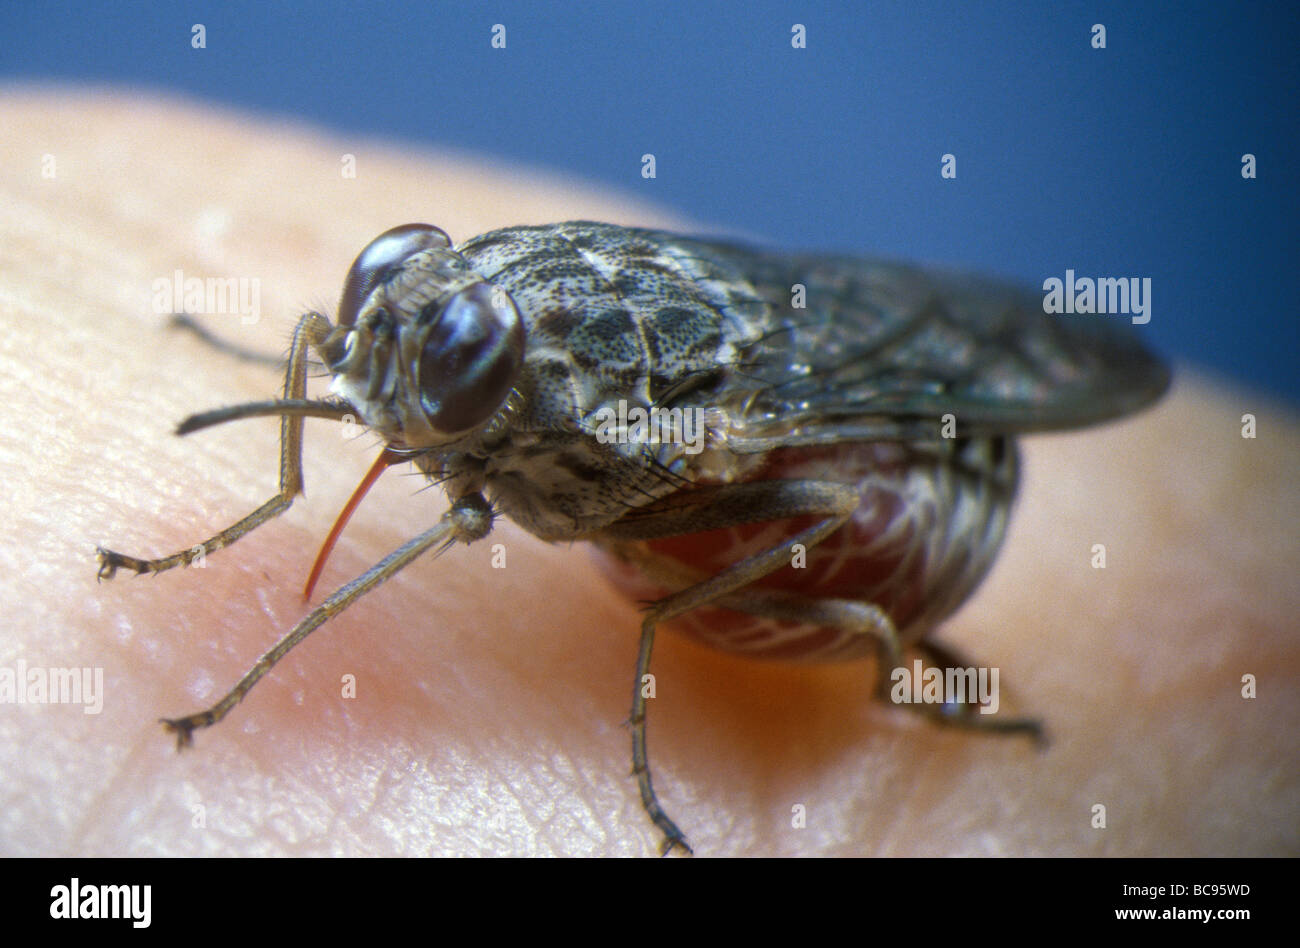 Tsetse Fly, Glossina - feeding on human blood. Tsetse flies are the vector for several tropical human diseases. Stock Photo